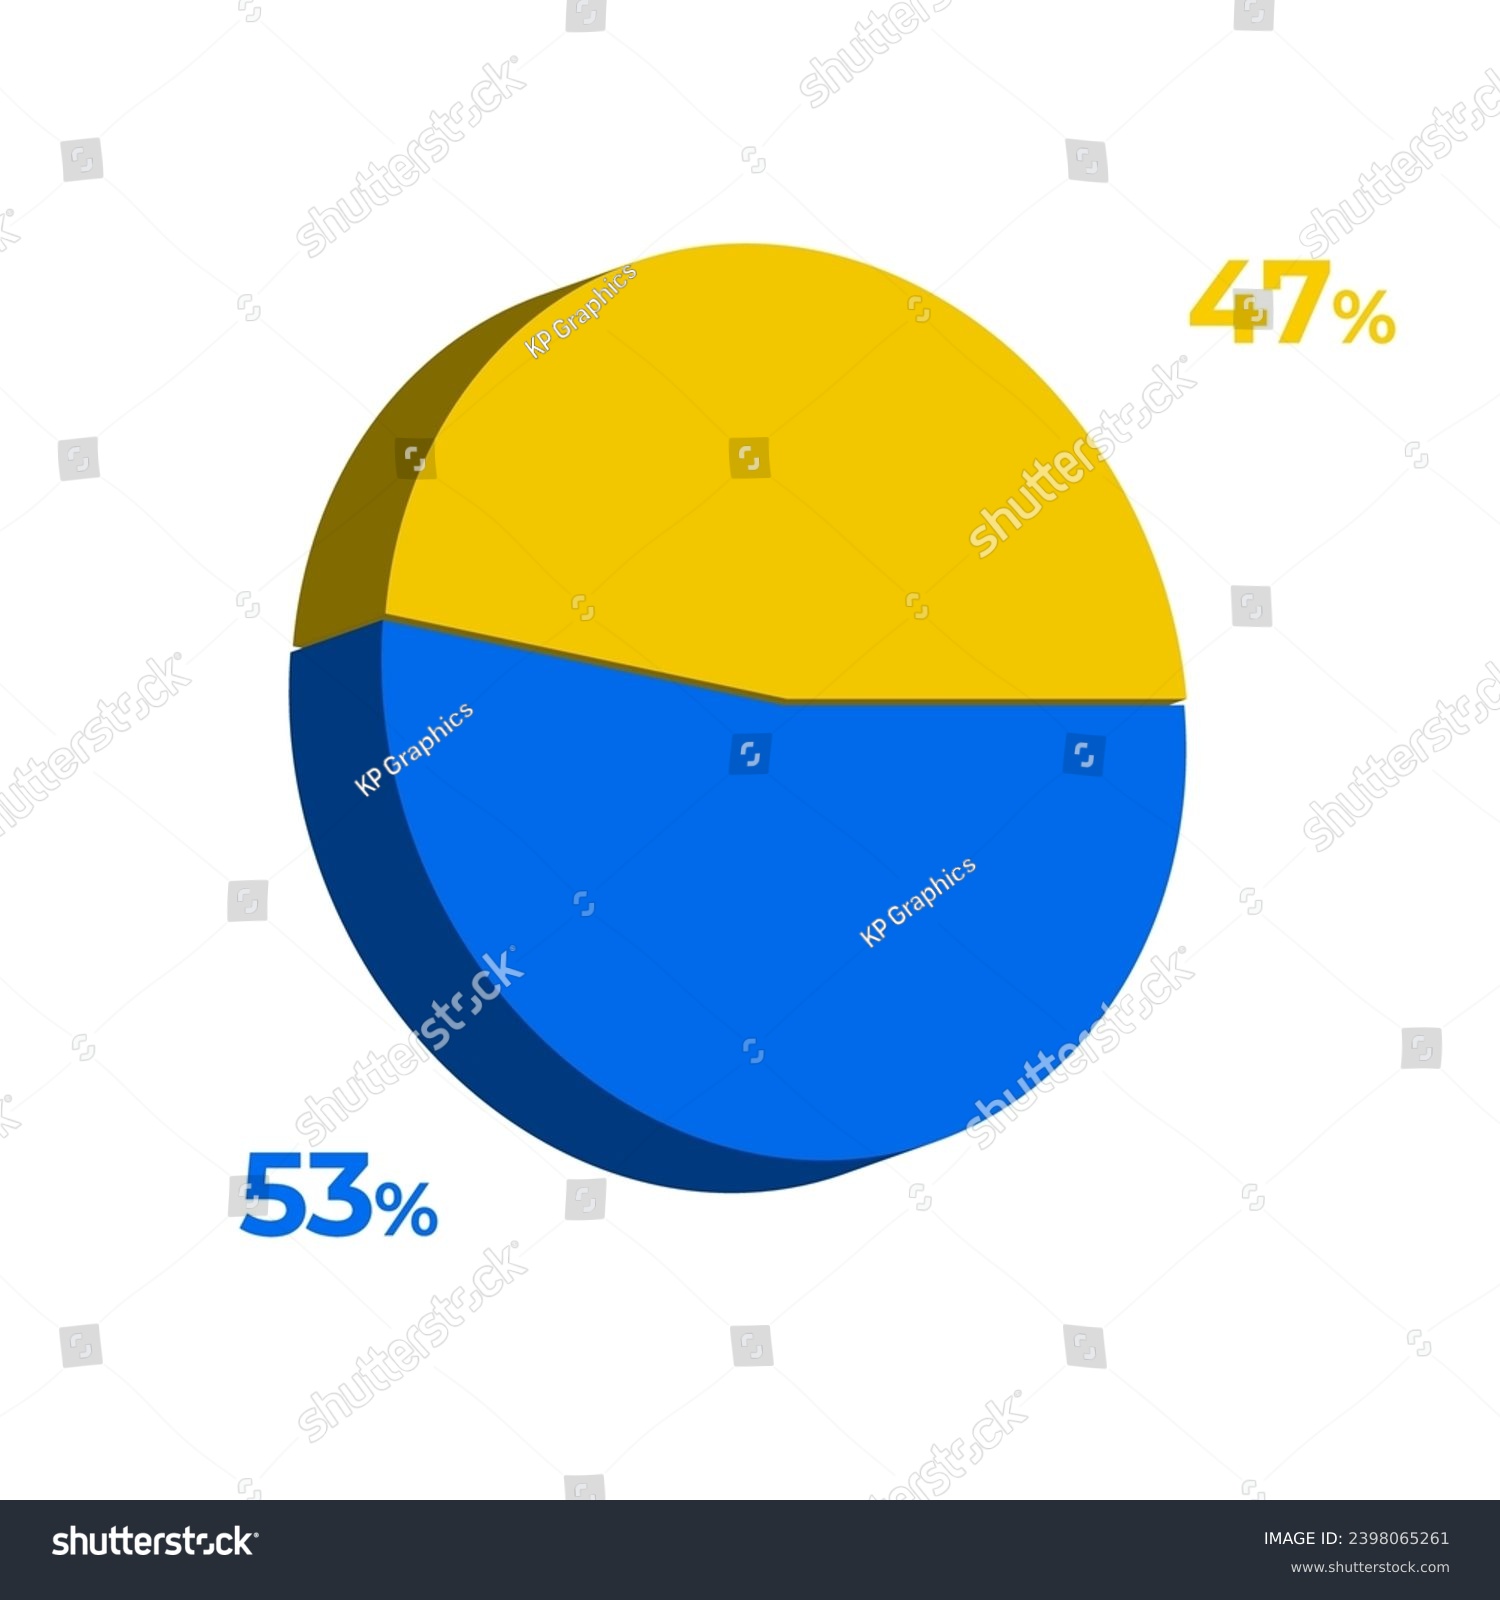 SVG of 53 47 percentage 3d pie chart vector illustration eps svg